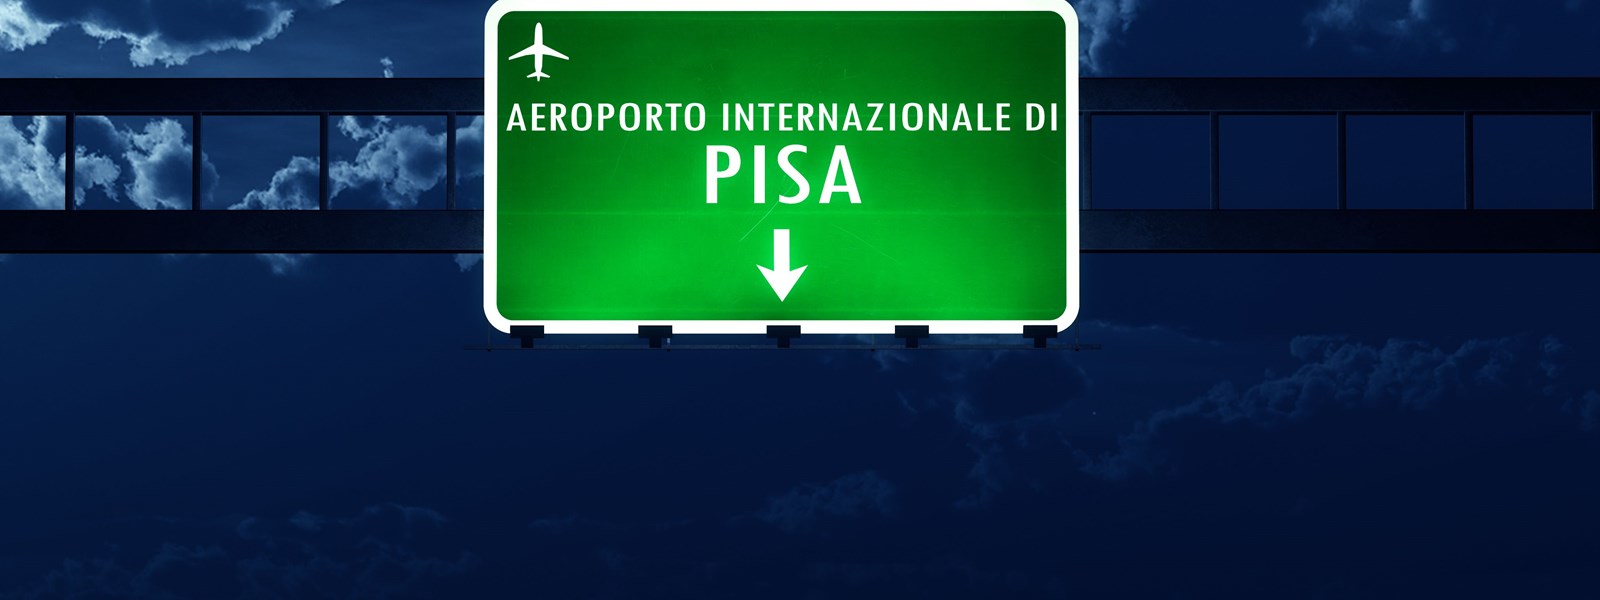 Pisa lufthavn i Toscana i Italien